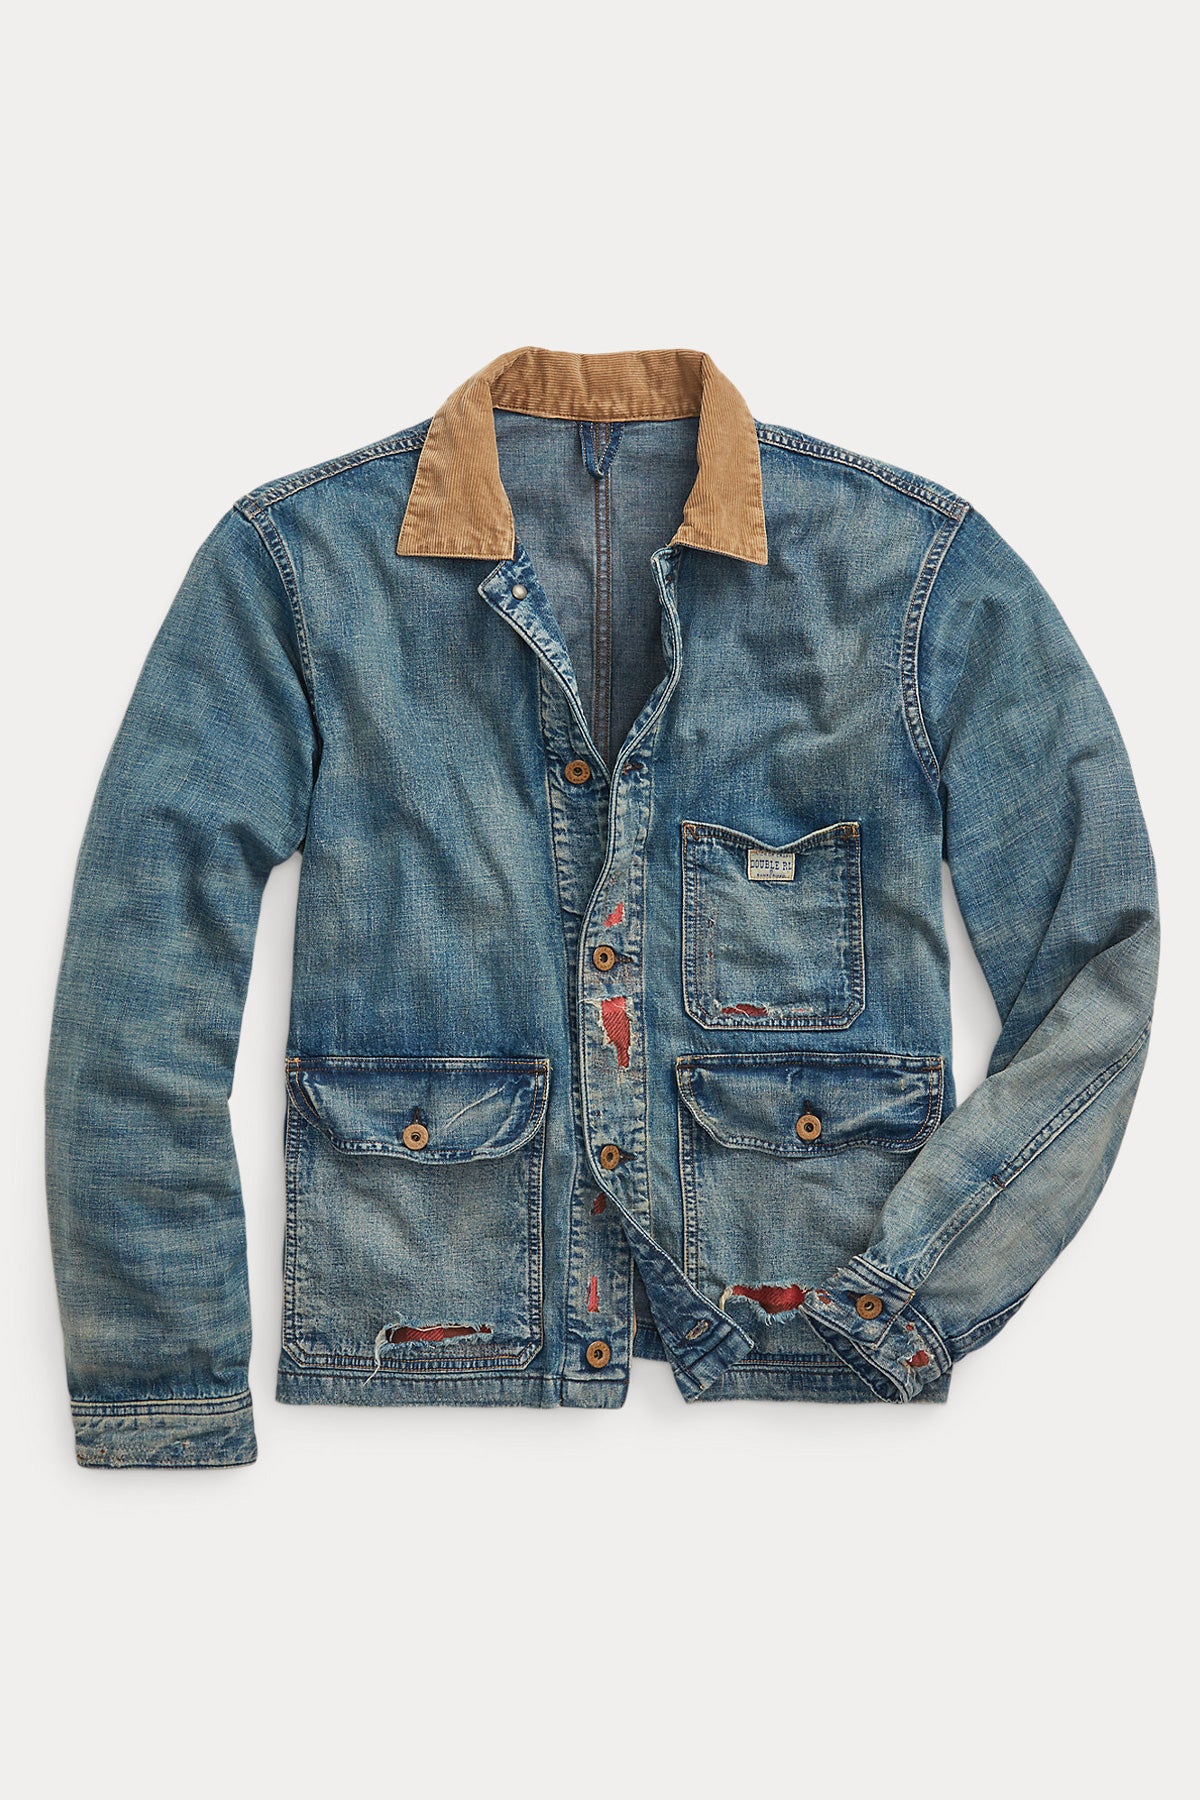 Indigo Cotton Linen Denim Work Jacket   Repaired Campton Wash